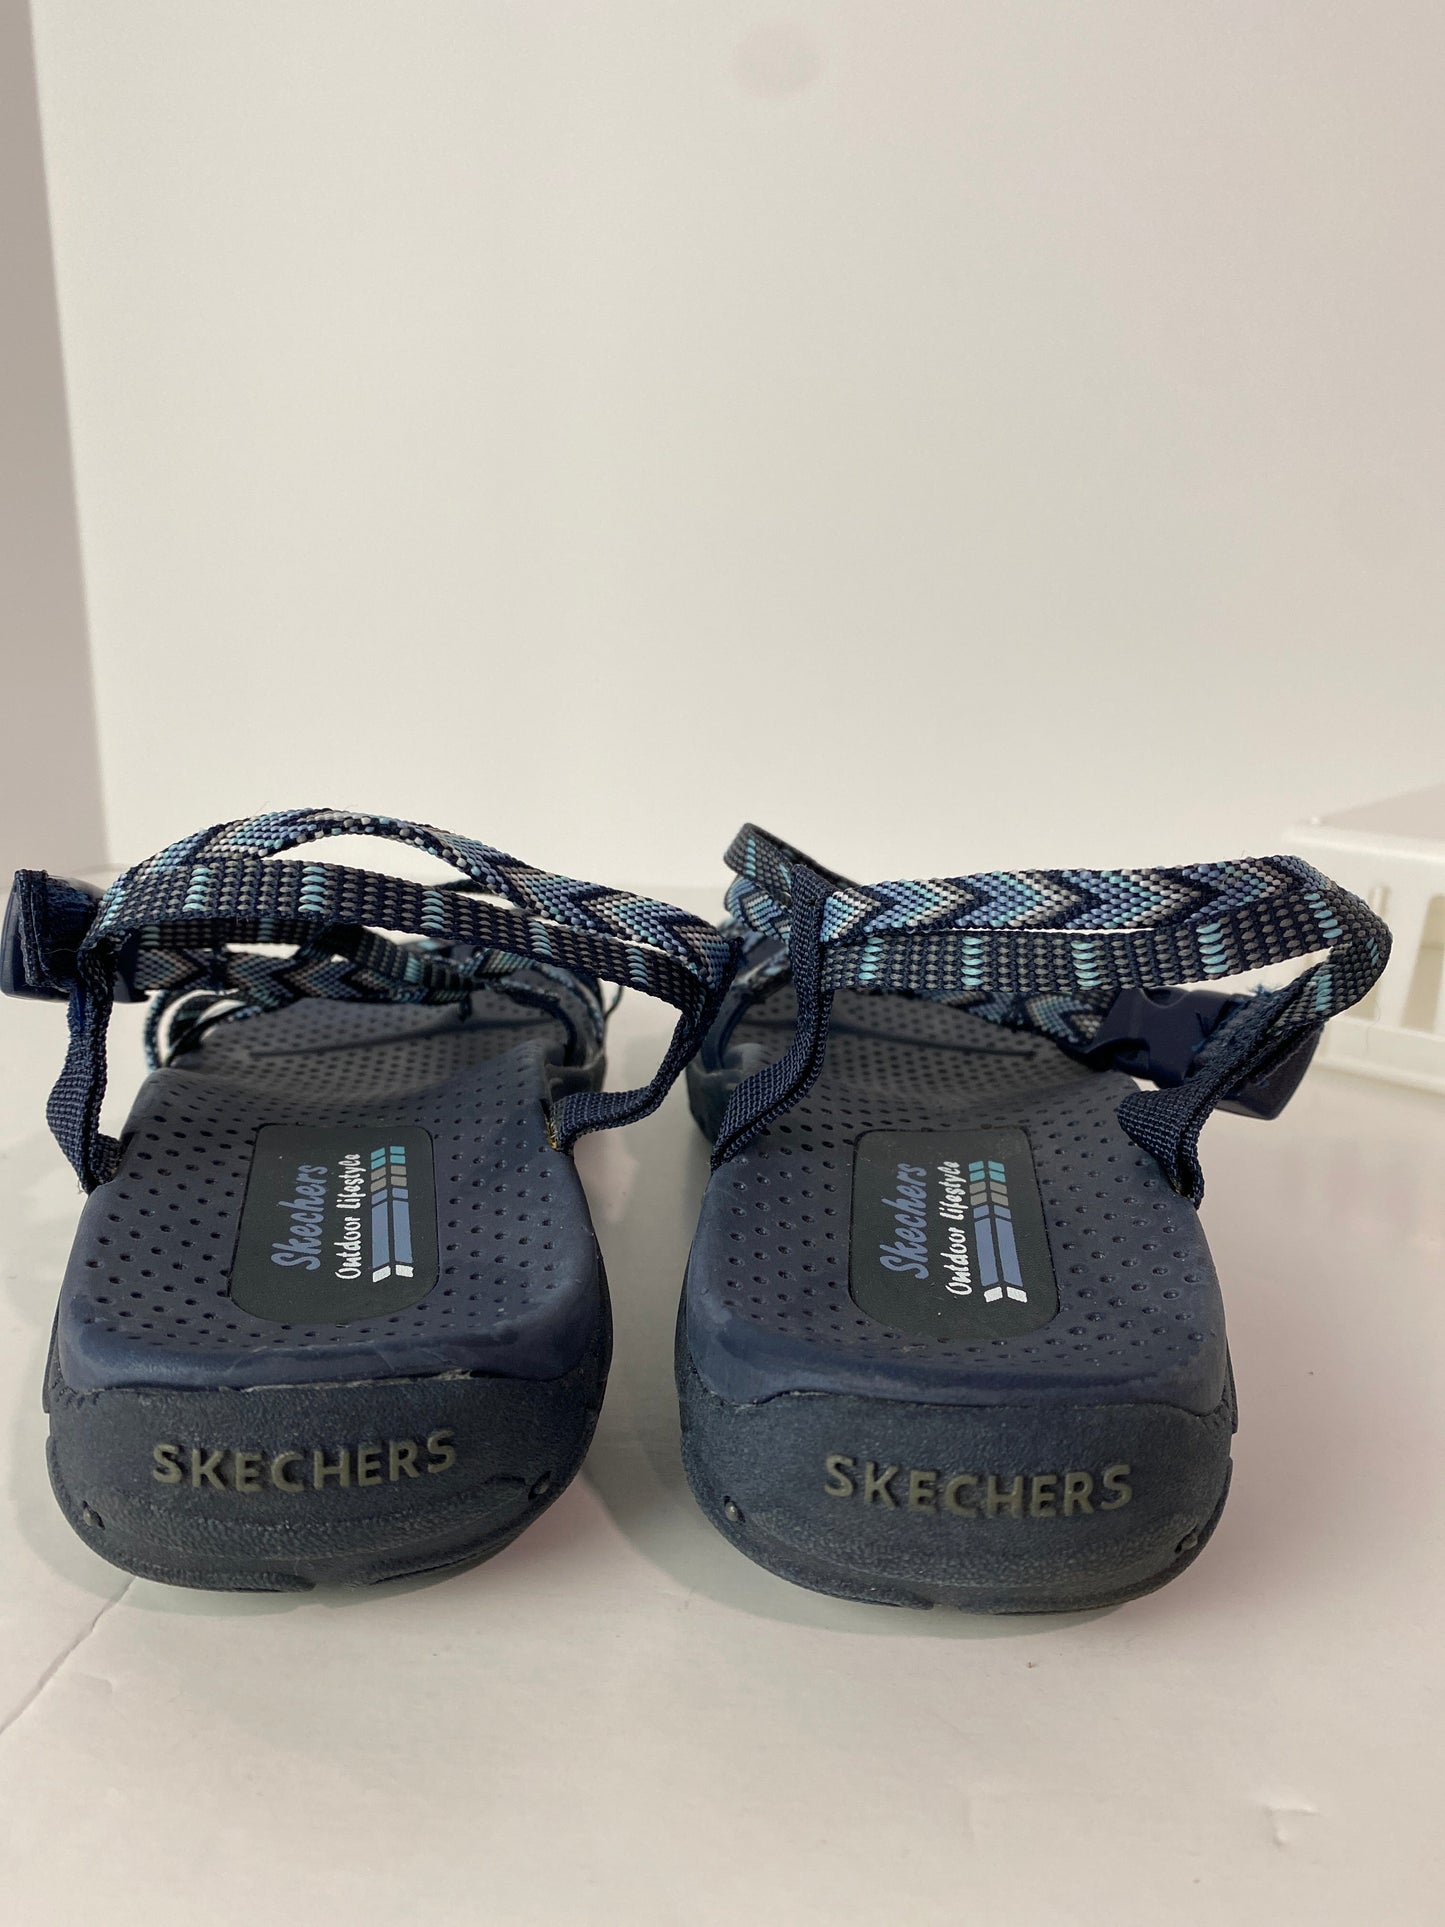 Blue Sandals Flats Skechers, Size 7.5